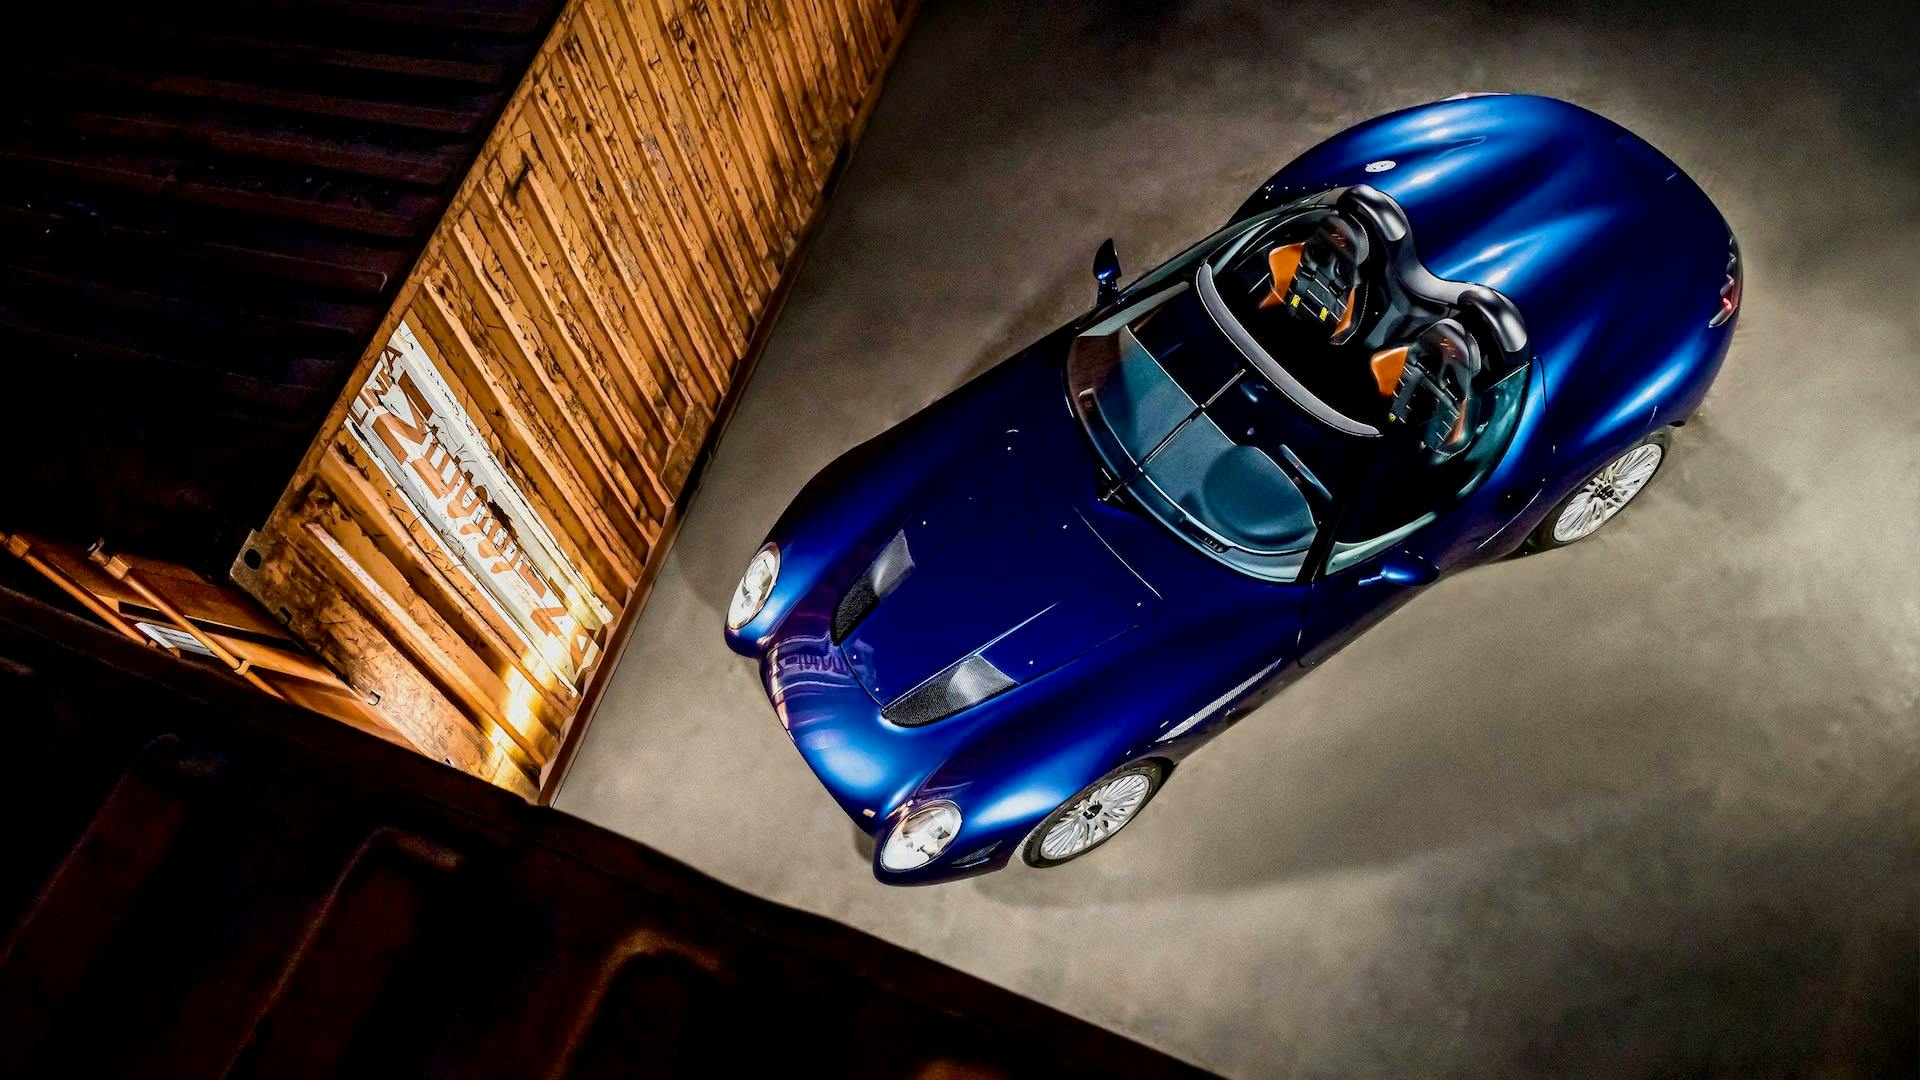 Mostro Barchetta Zagato Powered by Maserati